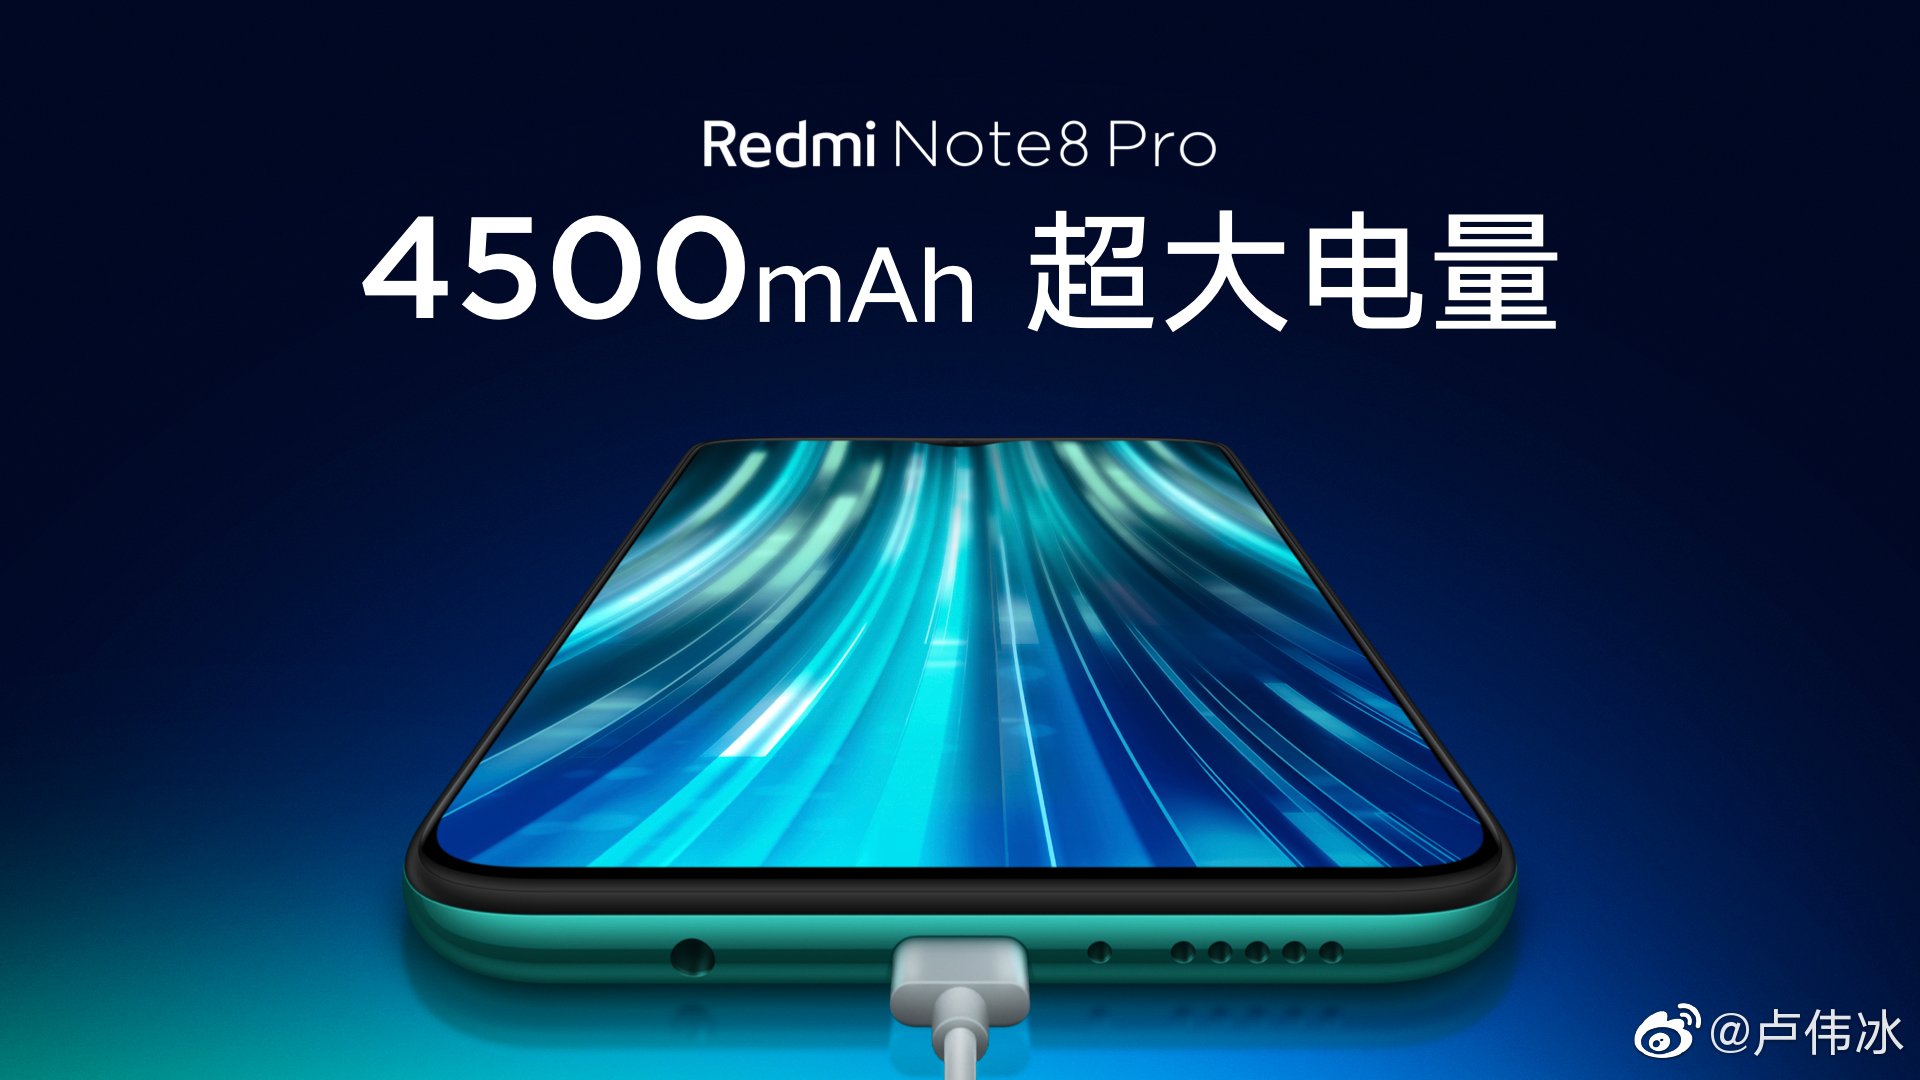 Redmi Note 8 Pro berfokus pada game: foto yang baru difilter 4